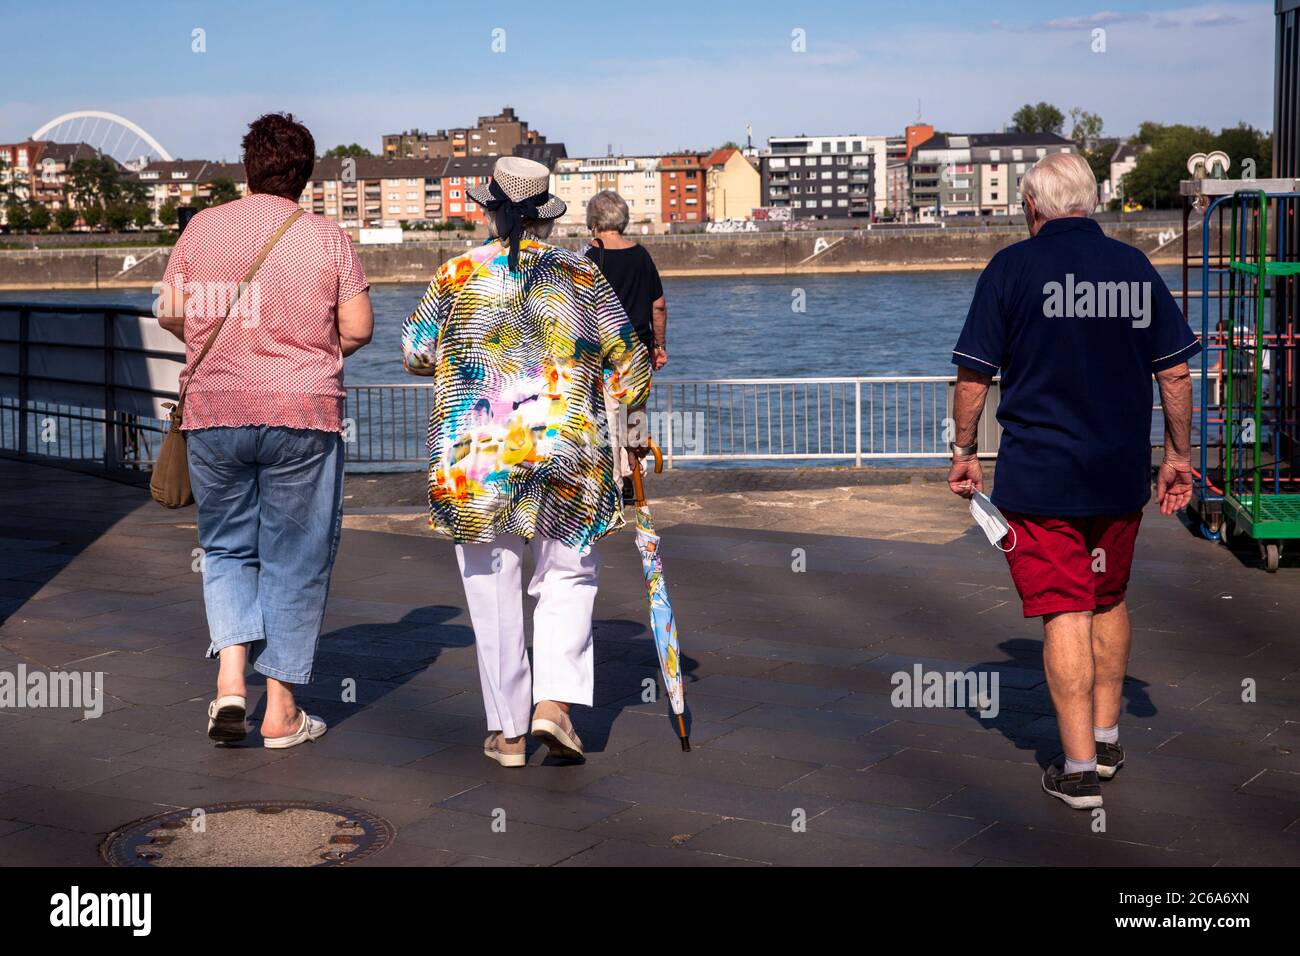 Frau in bunter Bluse mit Hut und Regenschirm geht mit Gefährten durch den Rheinauer Hafen, Köln, Deutschland Frau in bunter Bluse mit Hut und Re Stockfoto